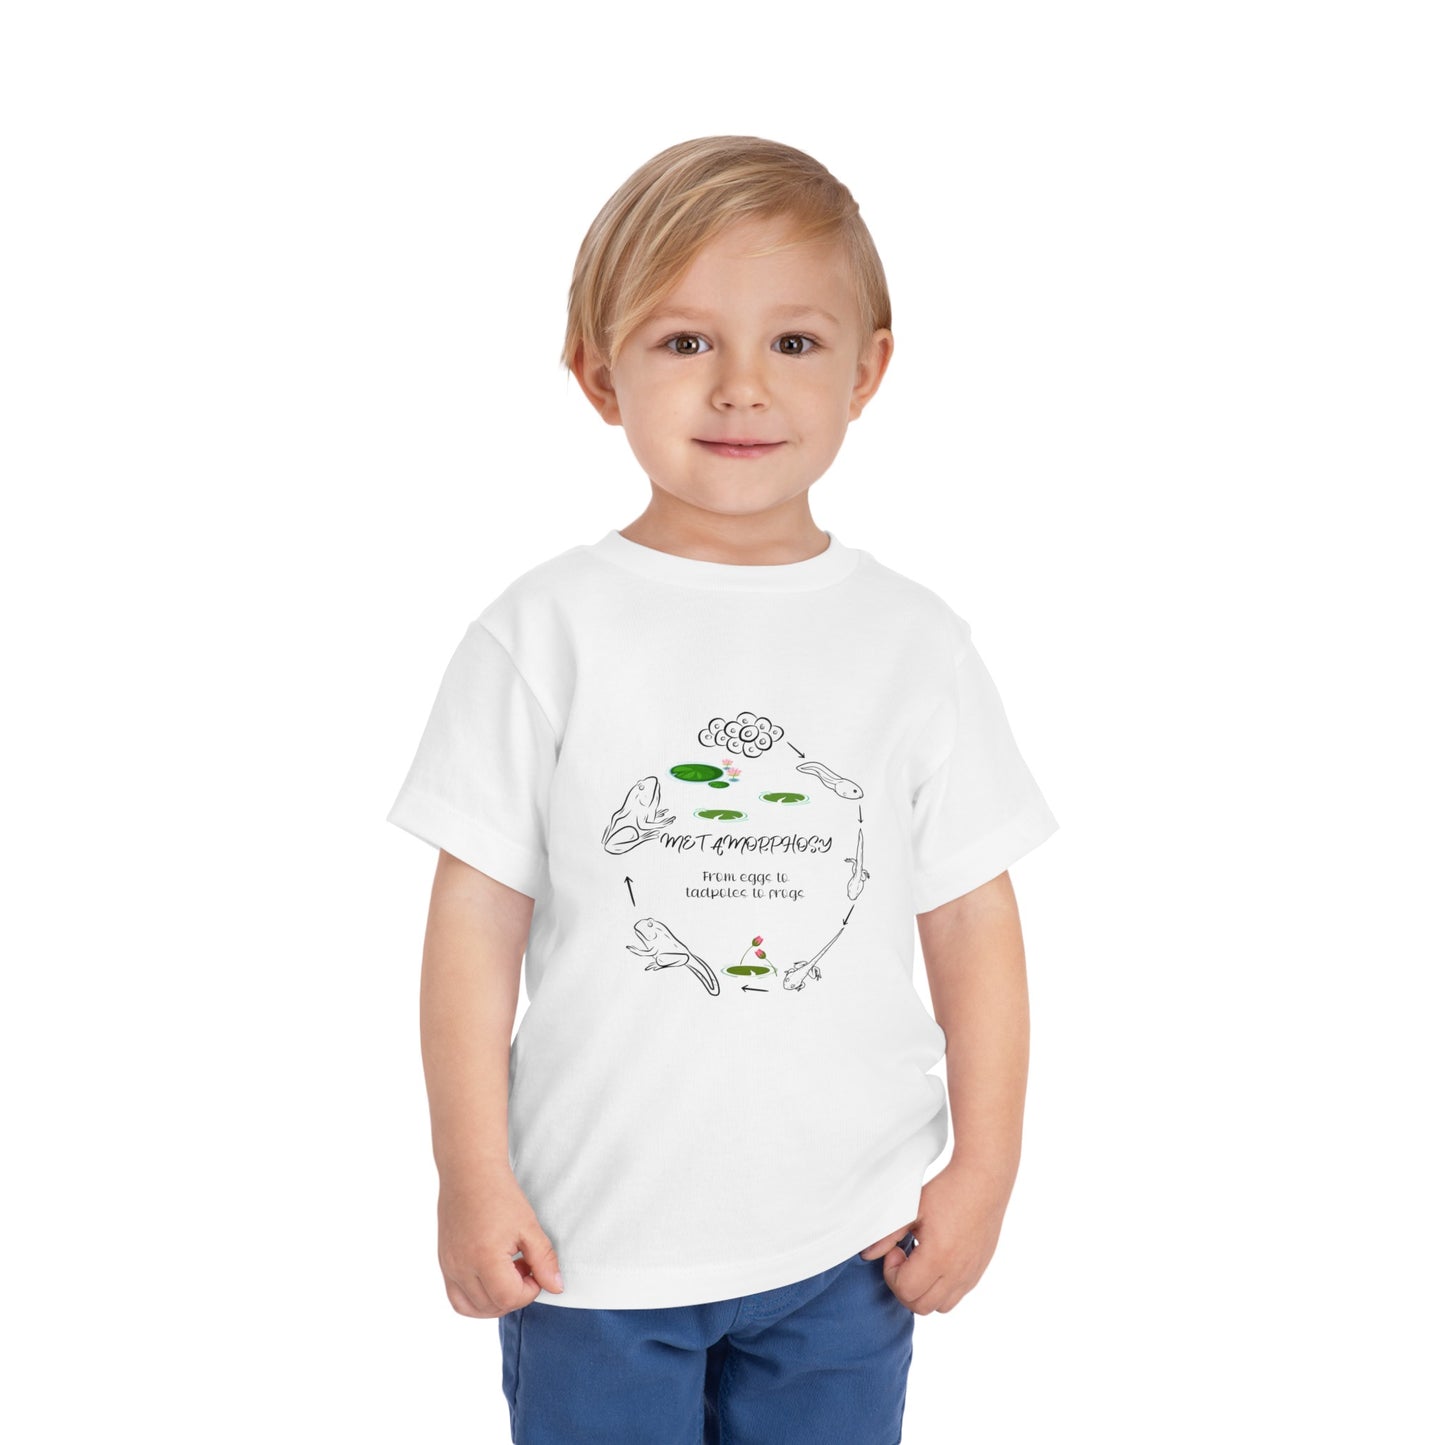 Frosch in Metamorphose Kleinkind T-Shirt, einzigartiges Frosch-Transformations-Design